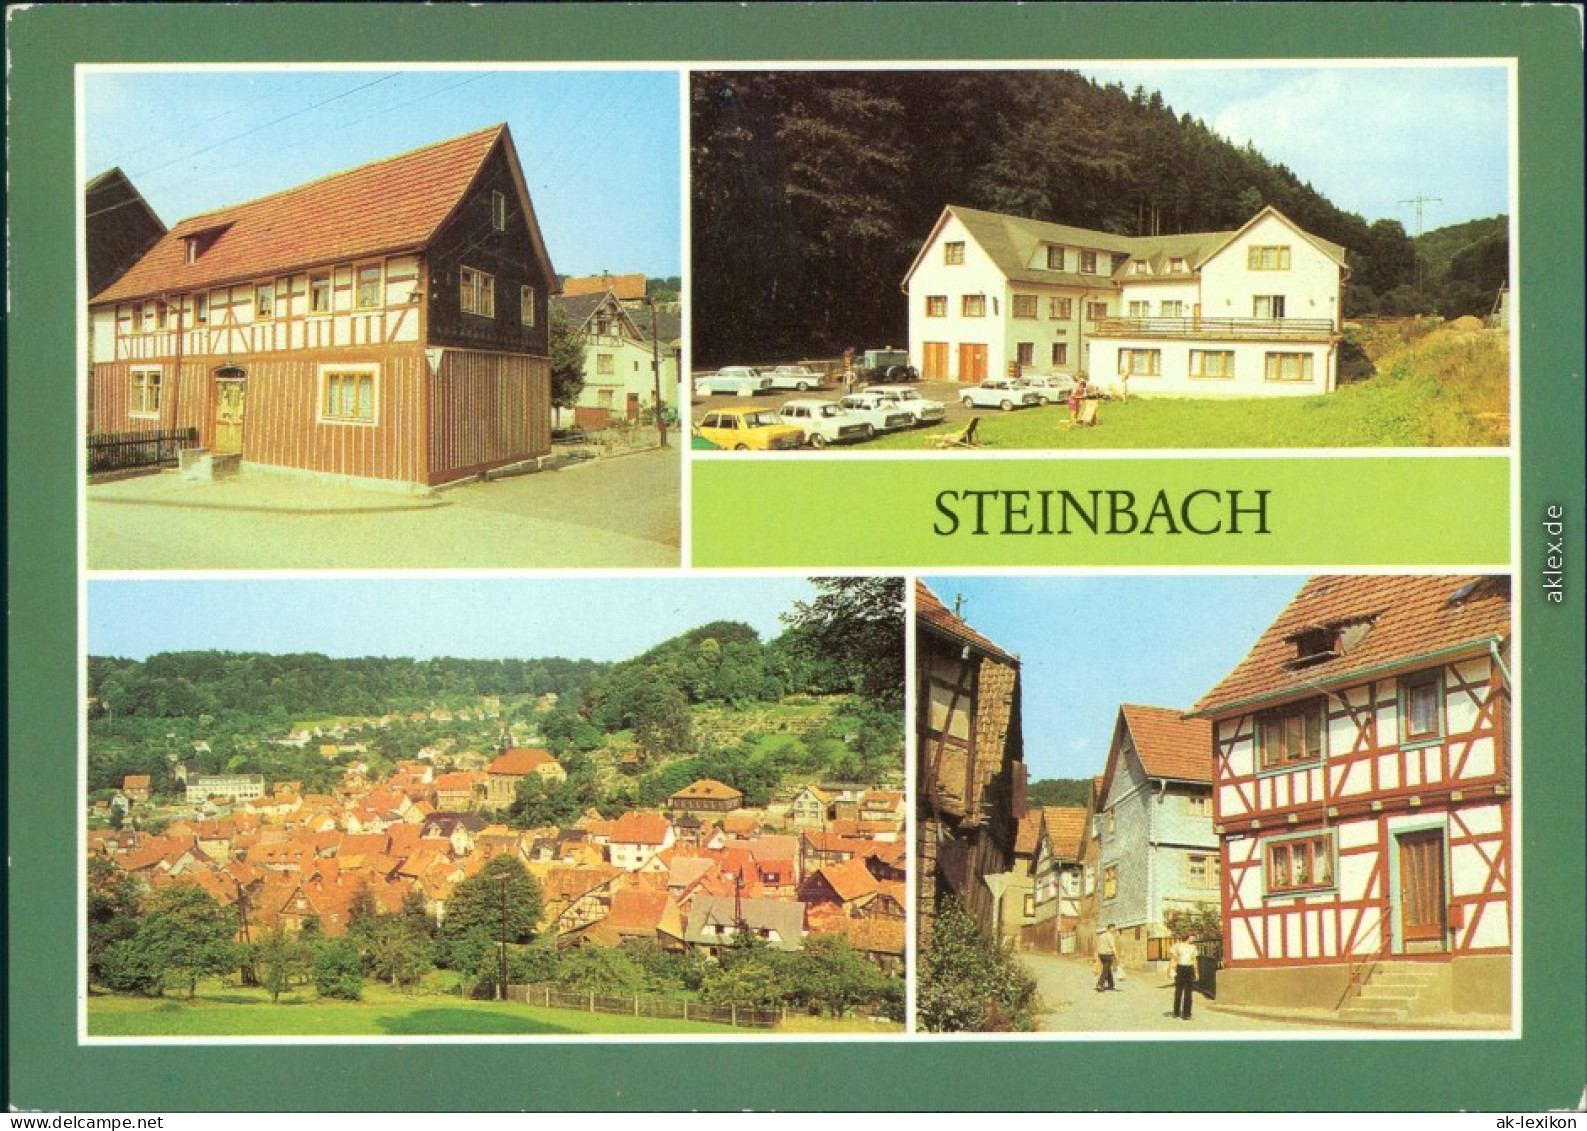 Steinbach Johanngeorgenstadt   VEB, Lohberg, Hintergasse 1984 - Johanngeorgenstadt